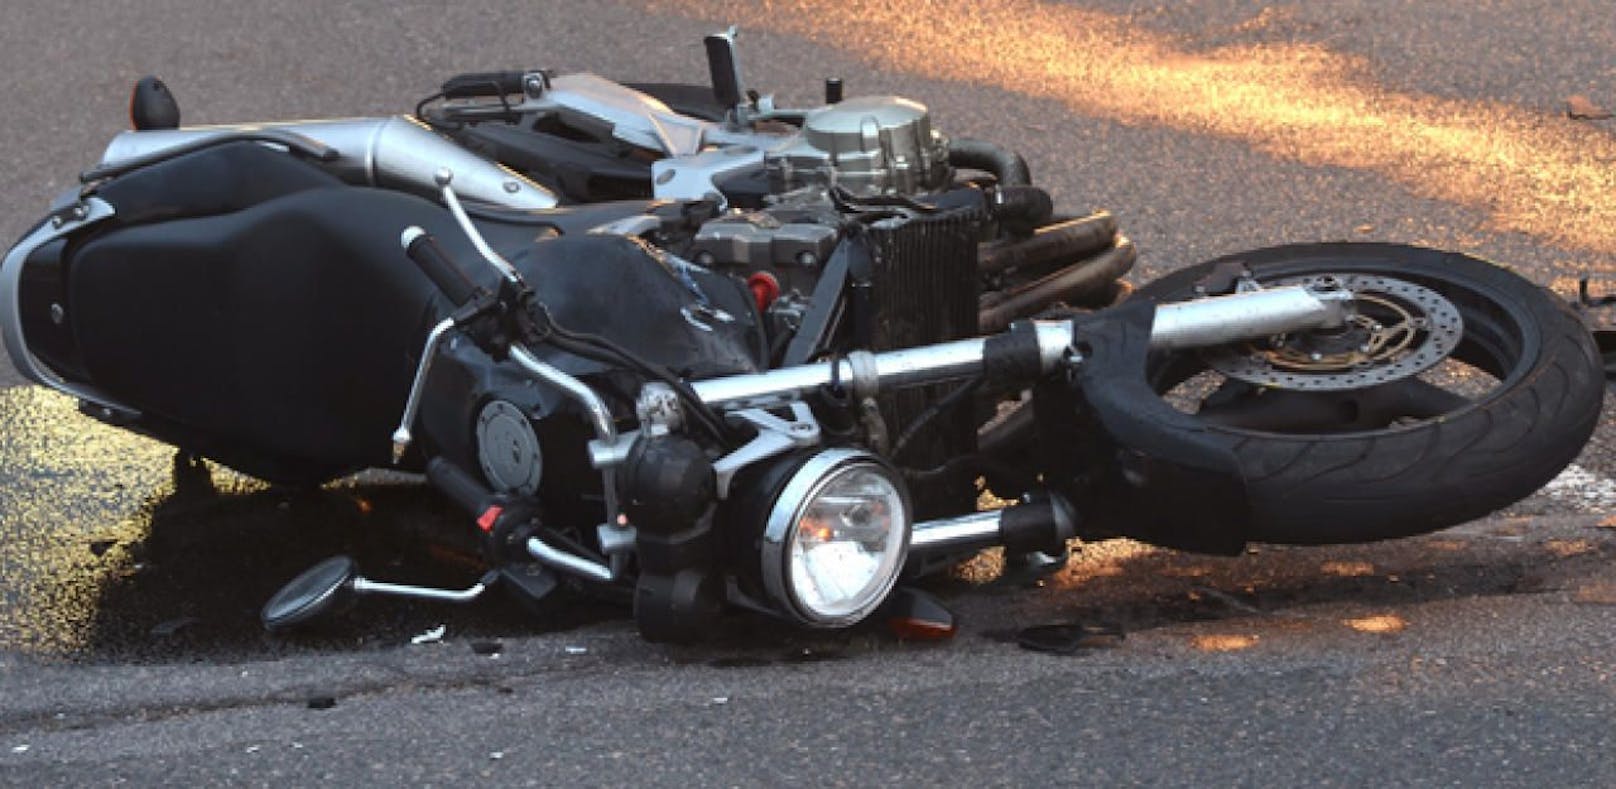 Der Motorradfahrer erlitt einen Herzinfarkt und wurde ins Krankenhaus gebracht